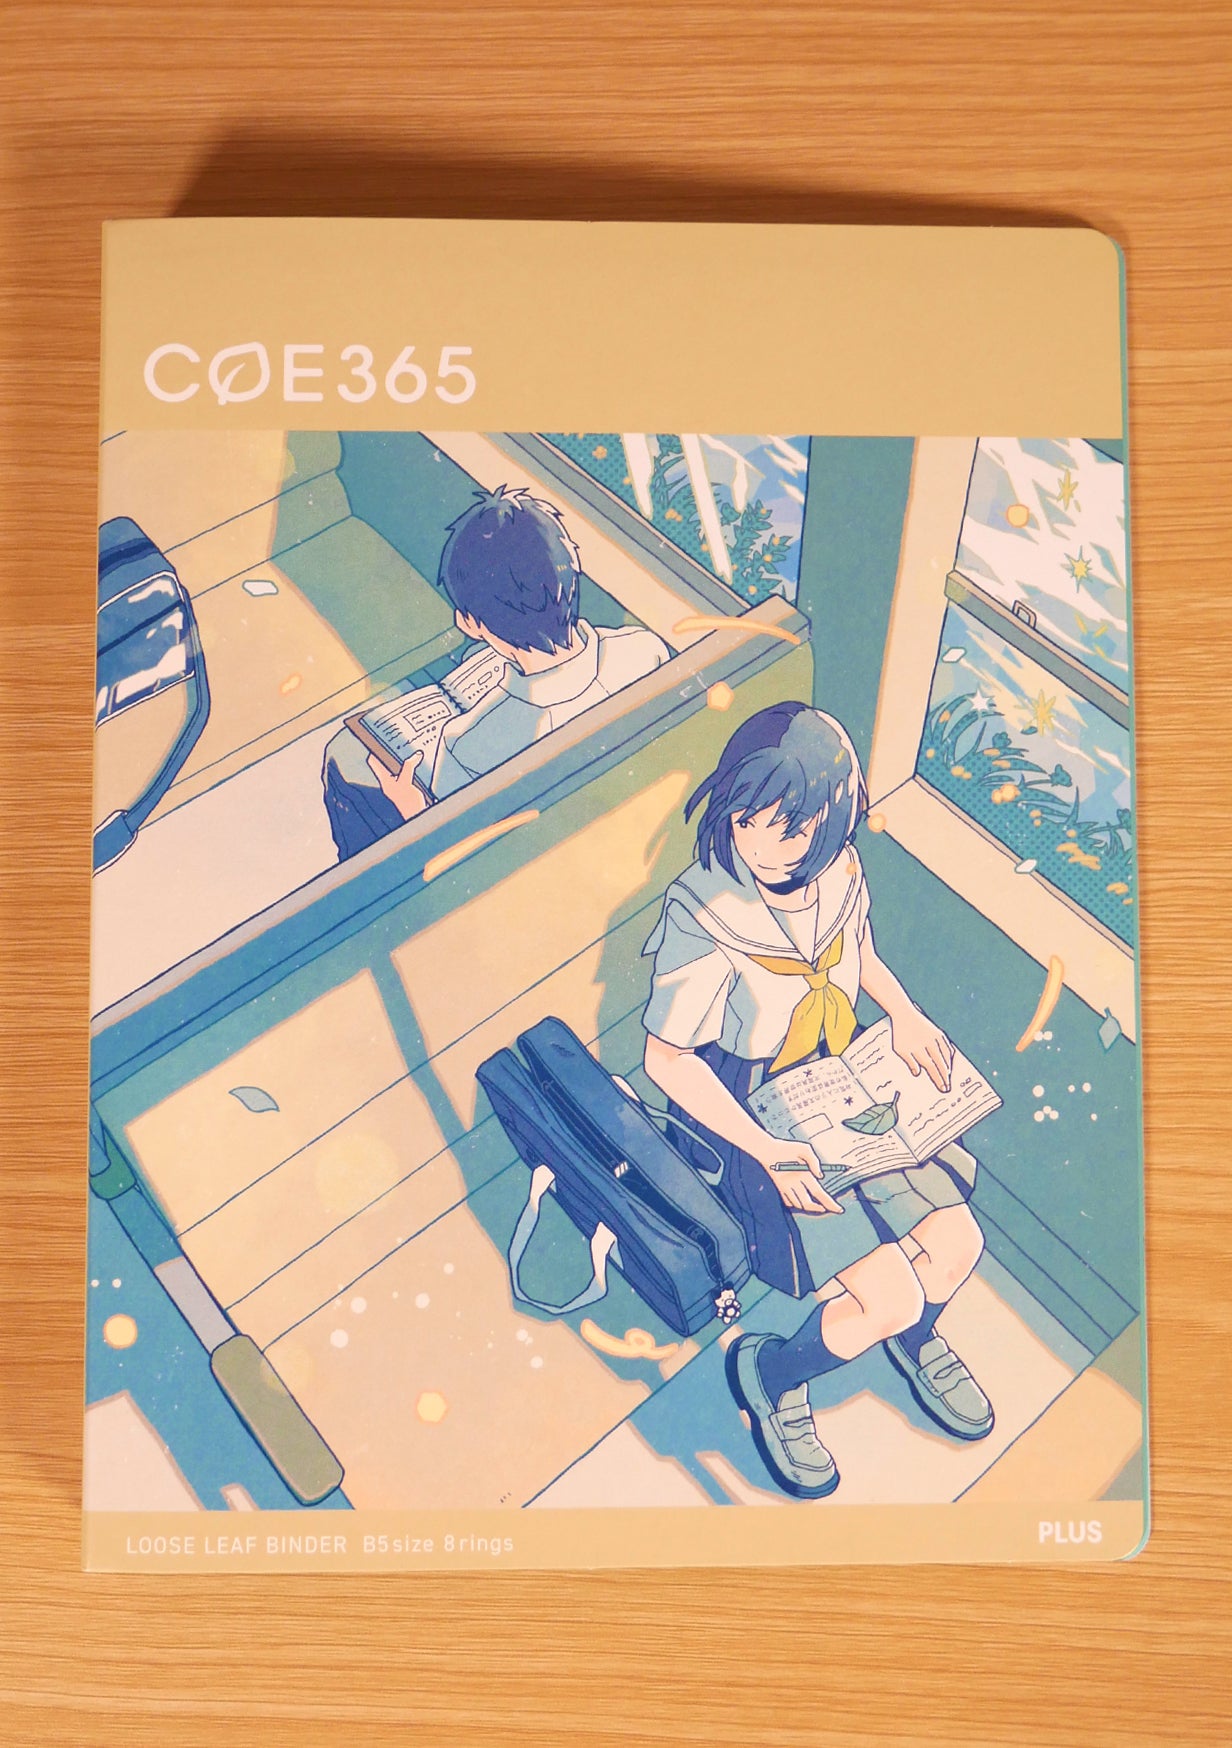 Classeur japonais COE 365 - School train